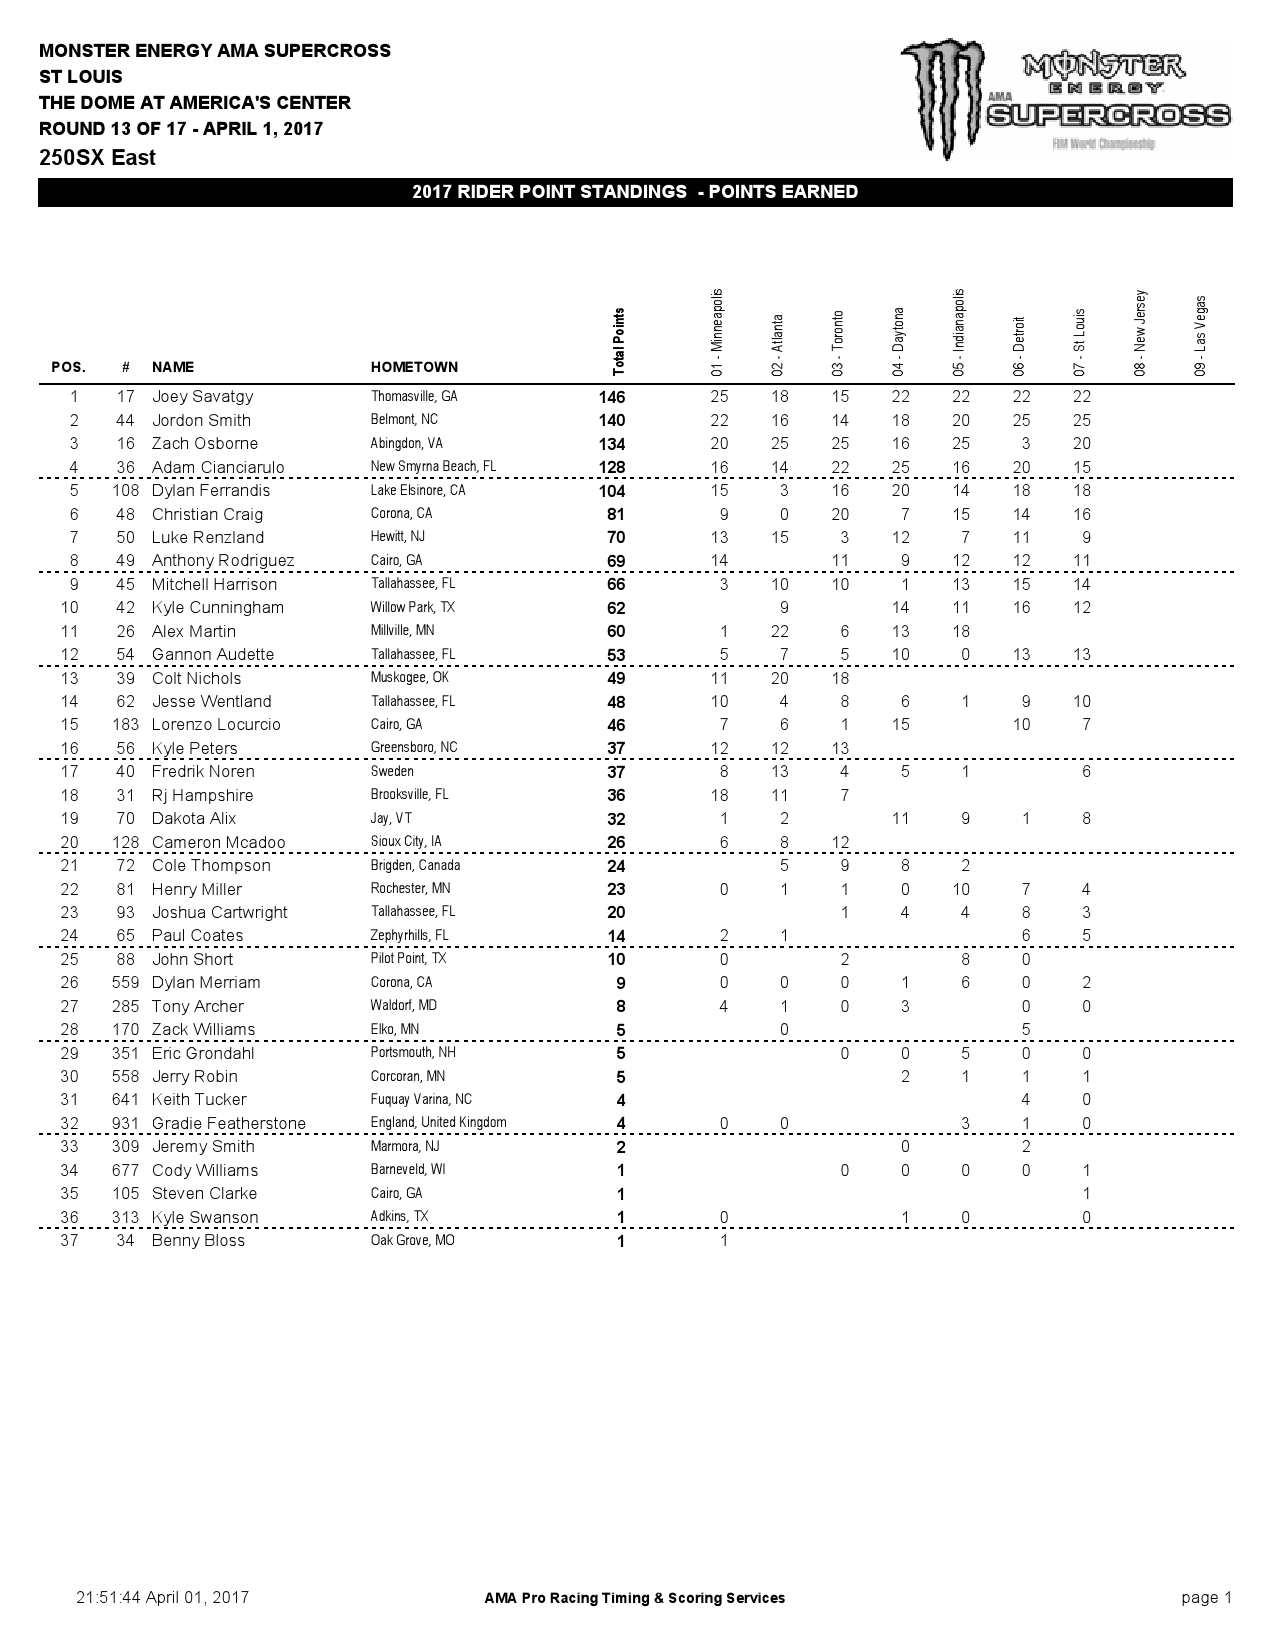 Протокол после 7 этапов Чемпионата AMA 250SX Восточного побережья